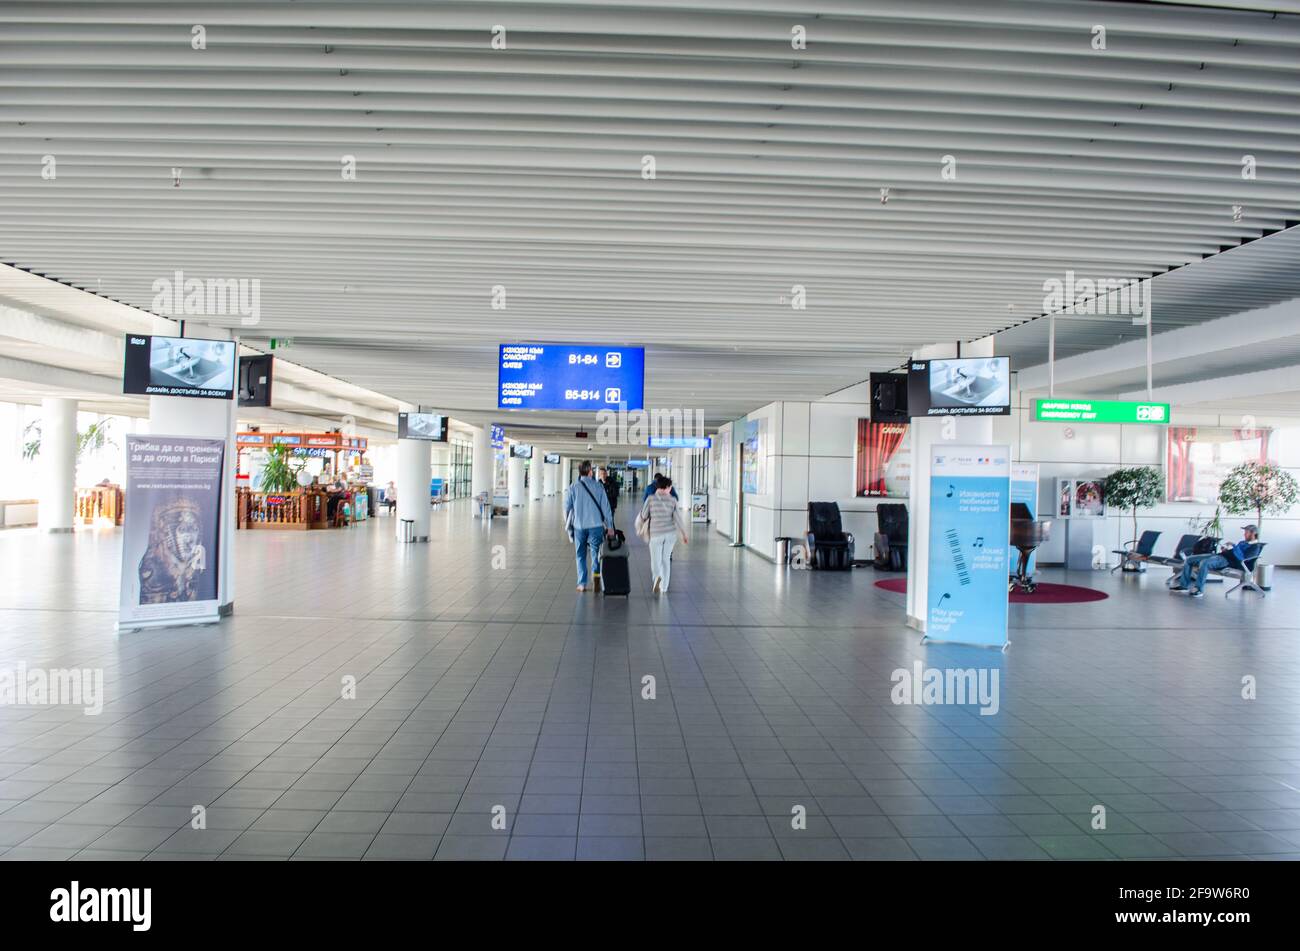 SOFIA, 20. FEBRUAR 2015: Innenansicht des internationalen Flughafens von sofia. Stockfoto